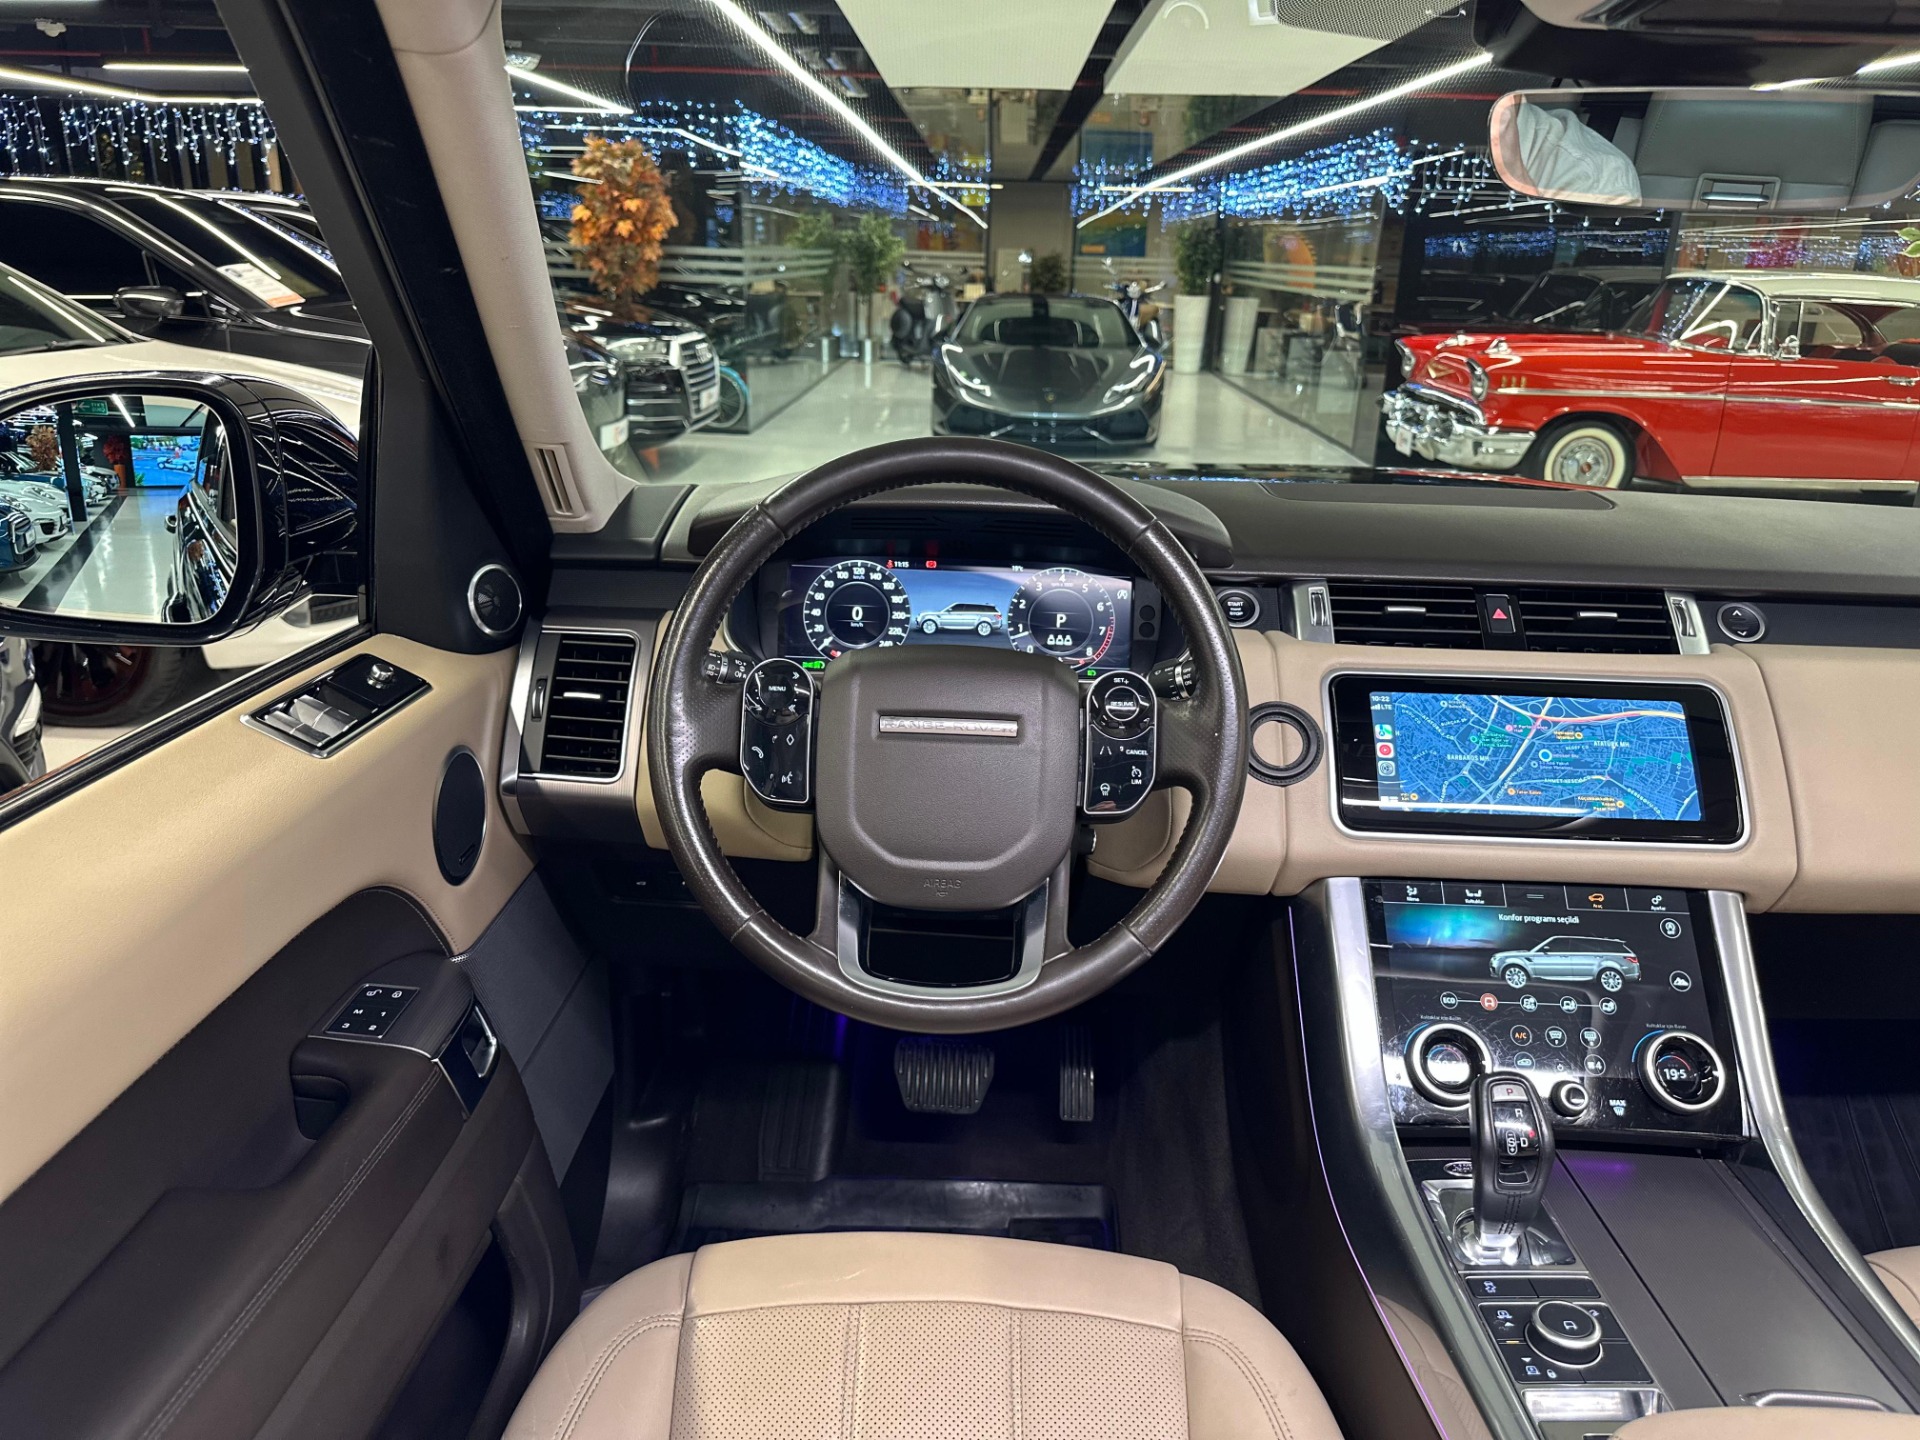 2019 Model Range Rover Sport 2.0 HSE-22